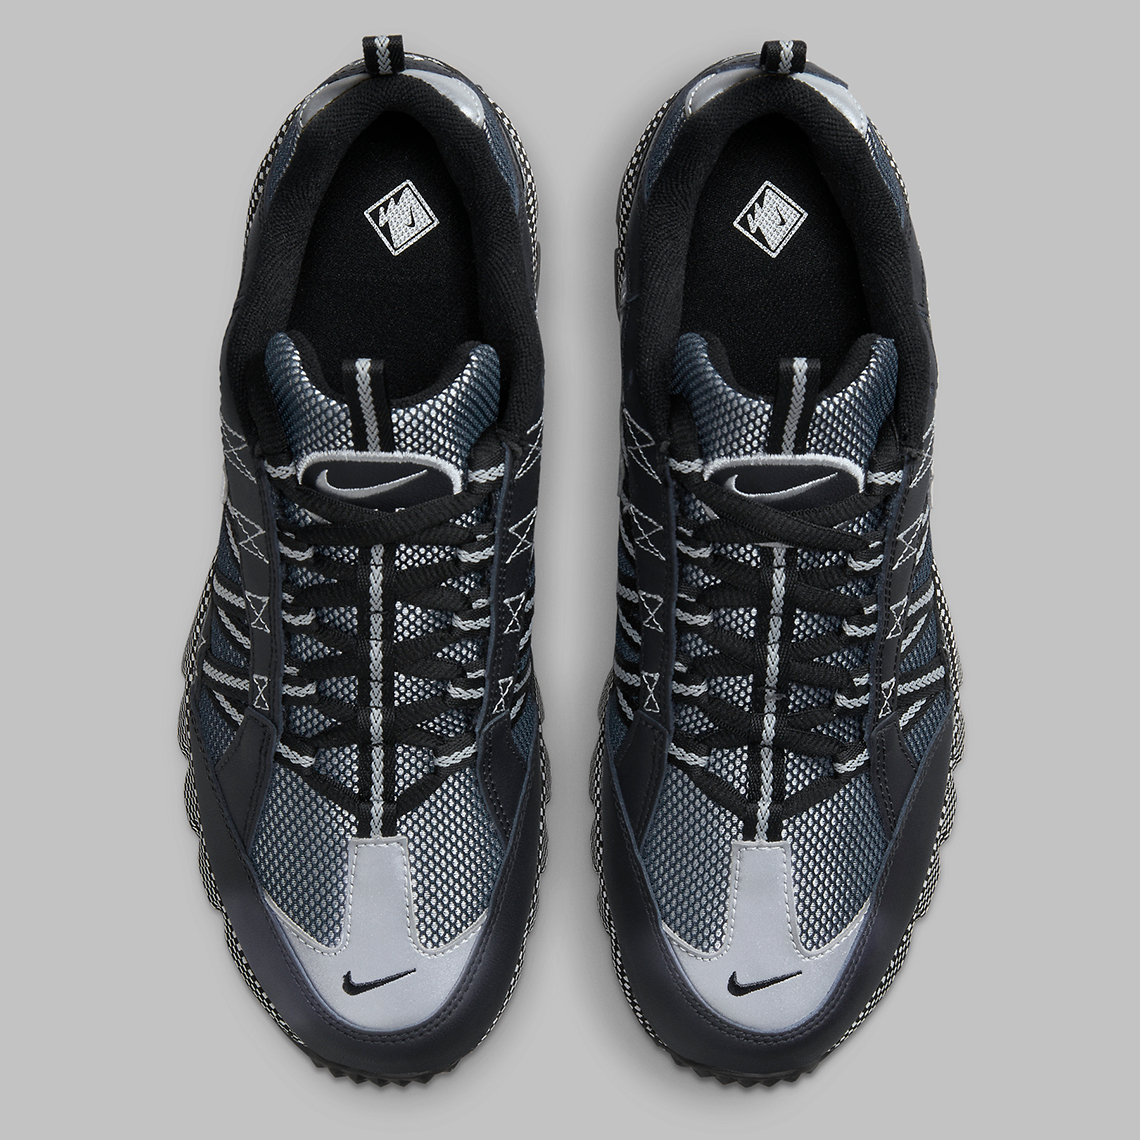 Nike Air Max 1 Canvas Premium Black Metallic Silver Fj7098 002 5